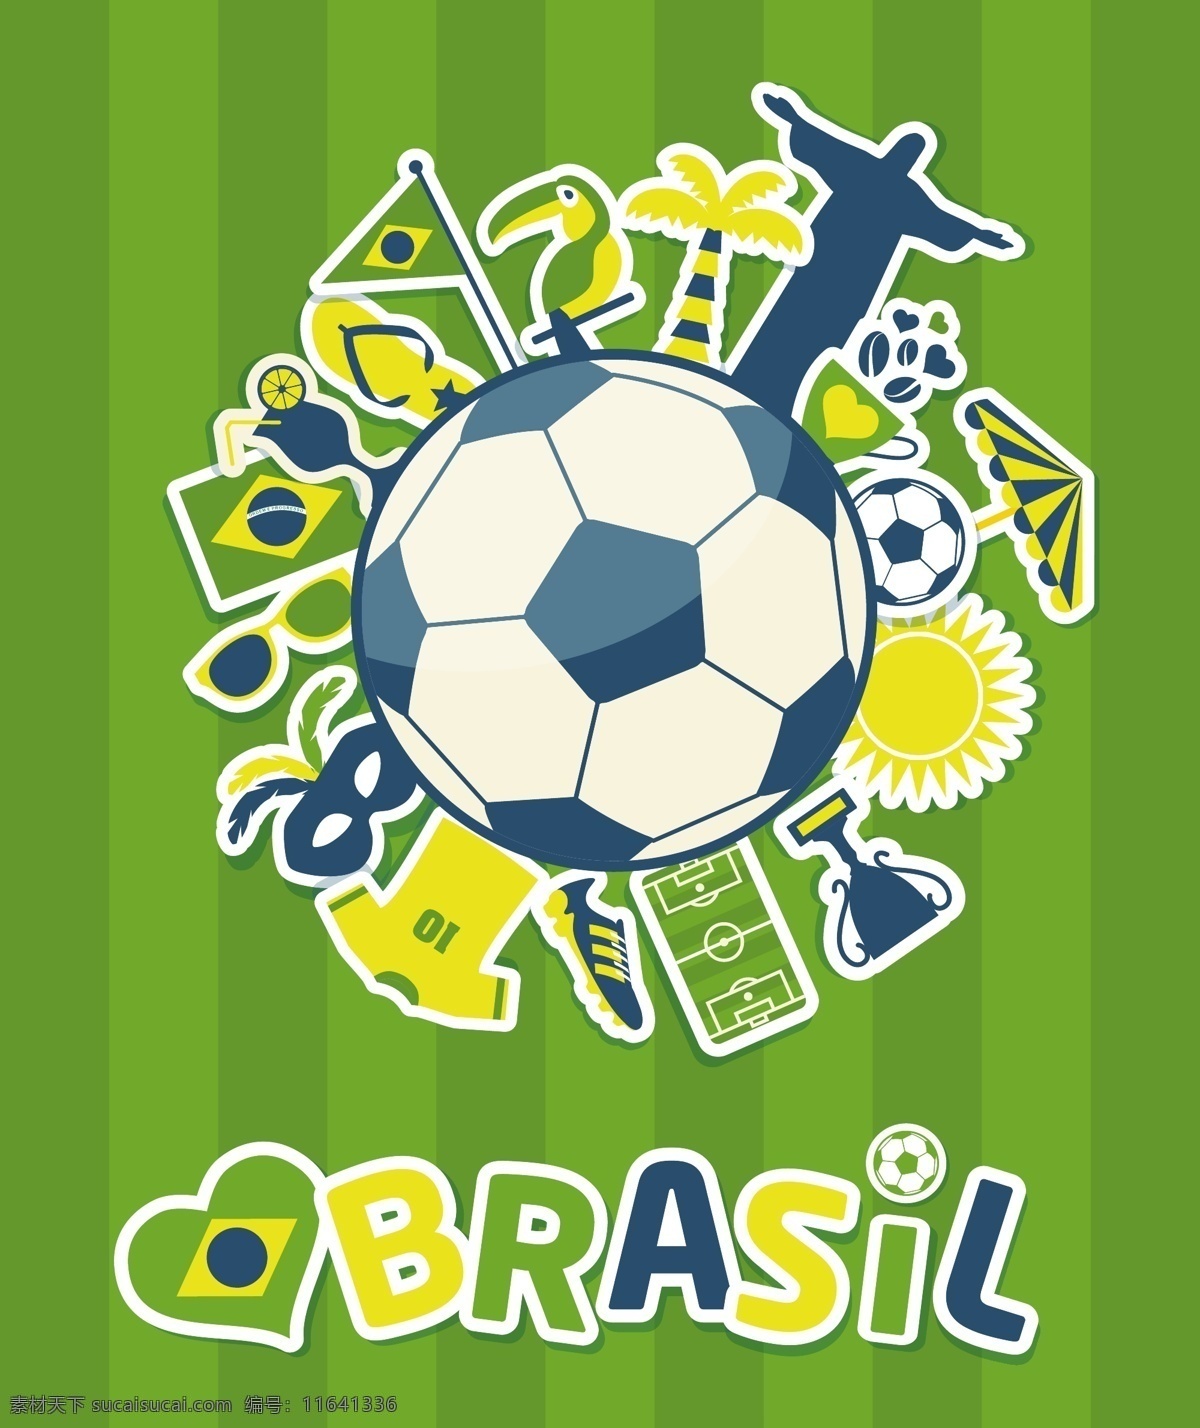 绿色 足球 巴西 景区 背景 模板下载 球服 球鞋 奖杯 神父雕像 世界杯 体育运动 生活百科 矢量素材 白色